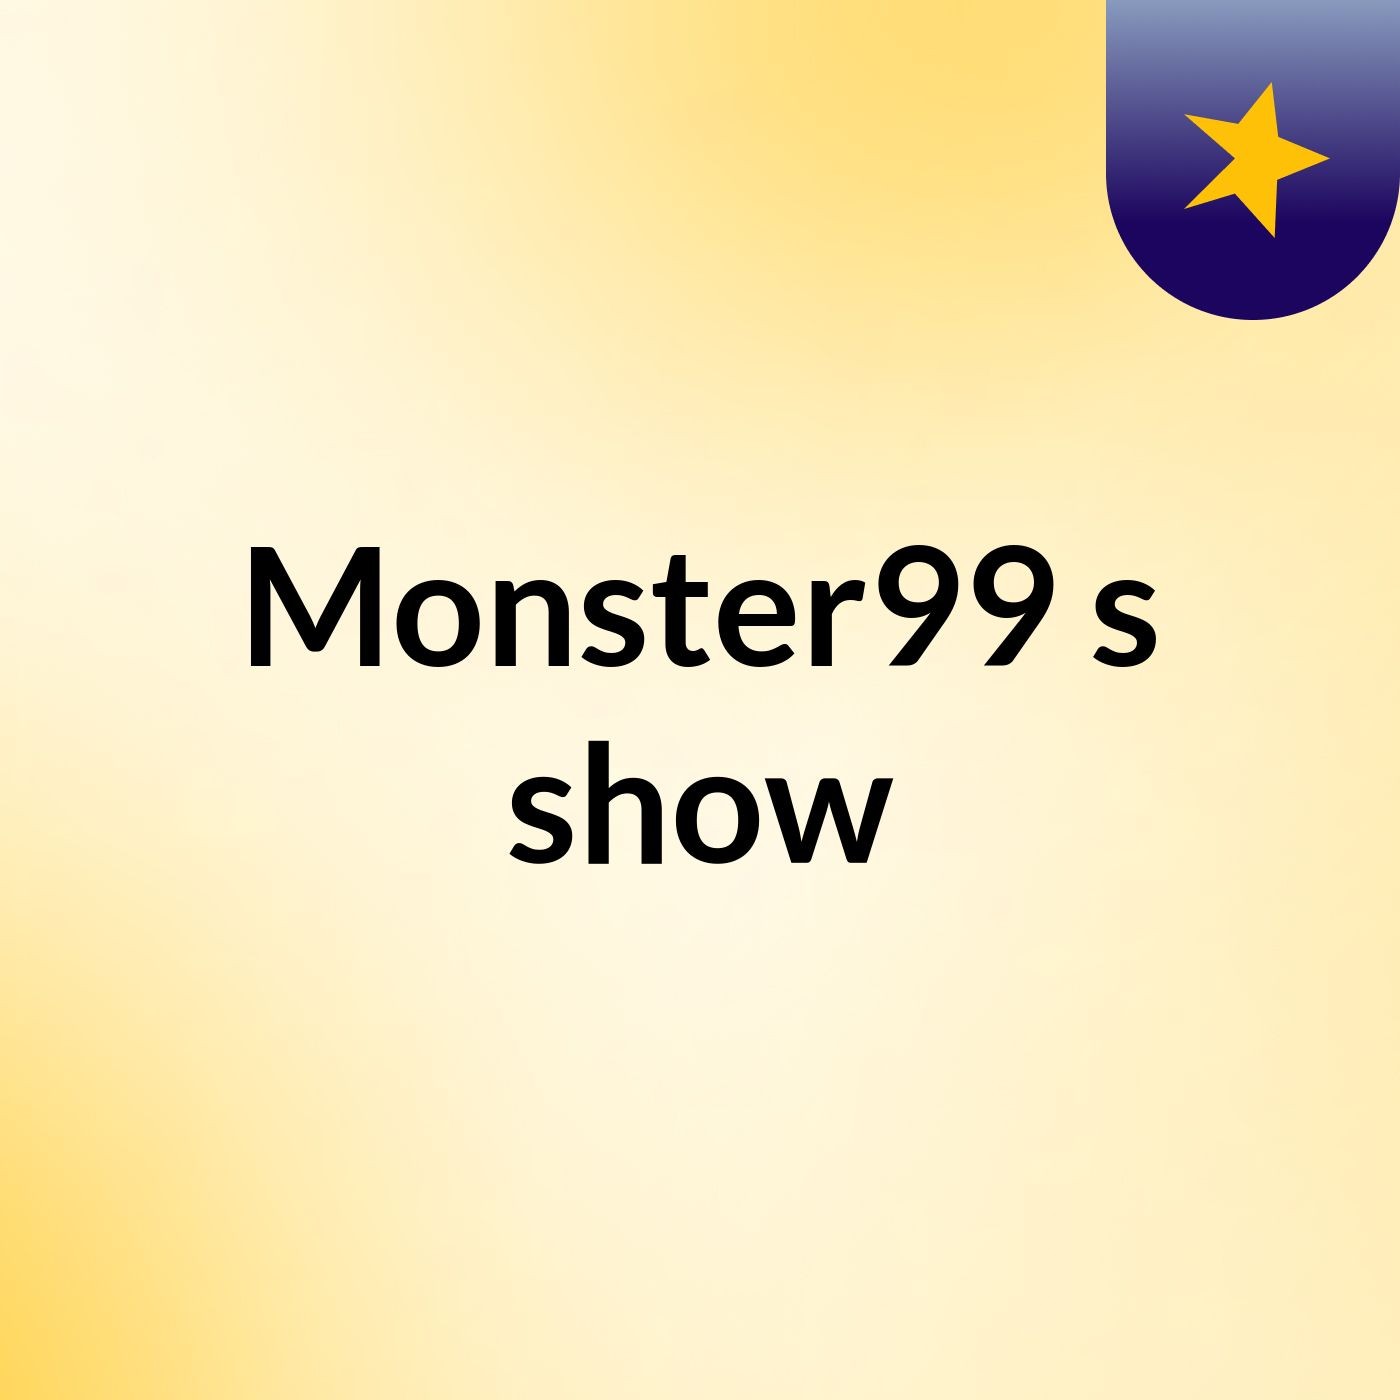 Monster99's show